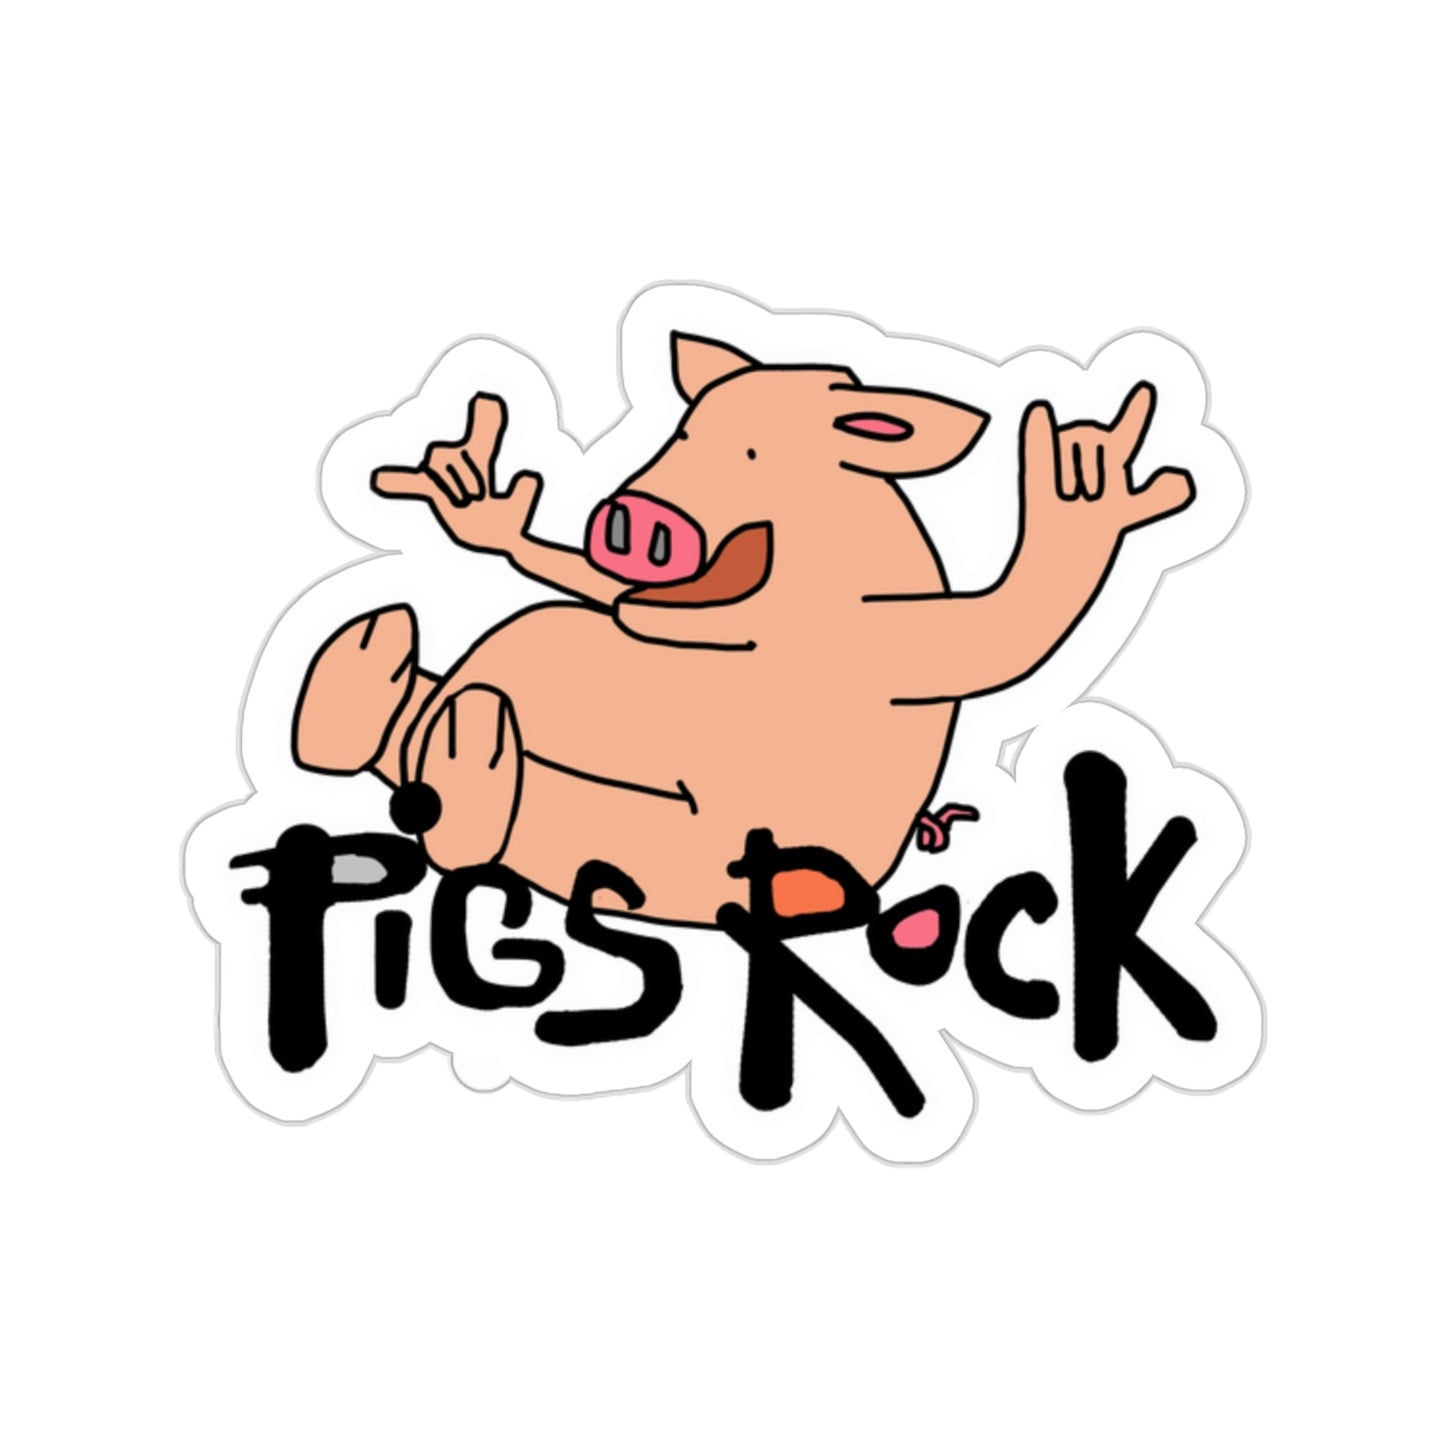 Pigs Rock Kiss-Cut Stickers